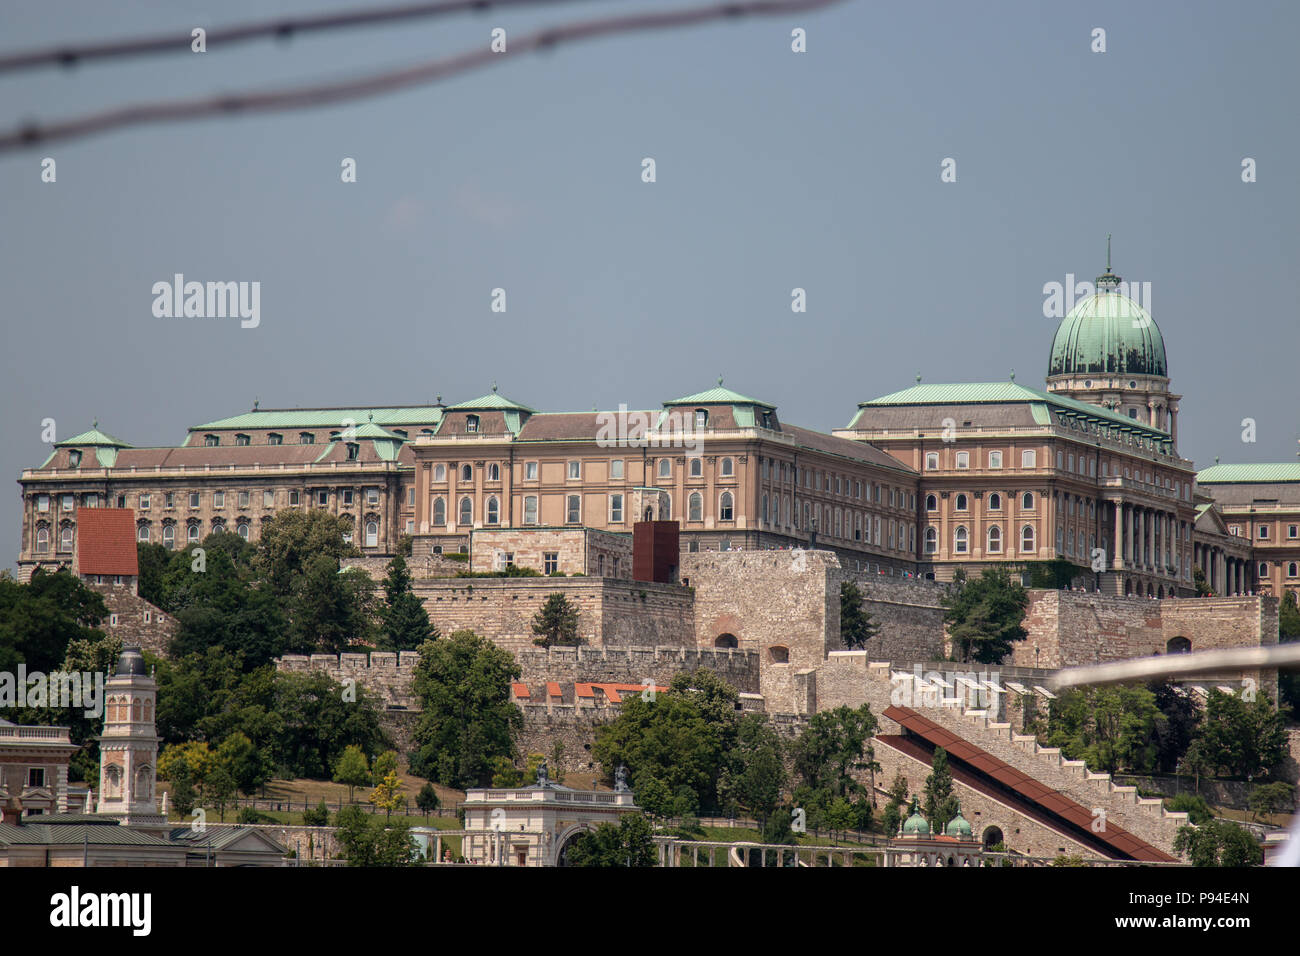 Vue du château de Buda de Pest, sur la rive gauche du Danube à Budapest Banque D'Images